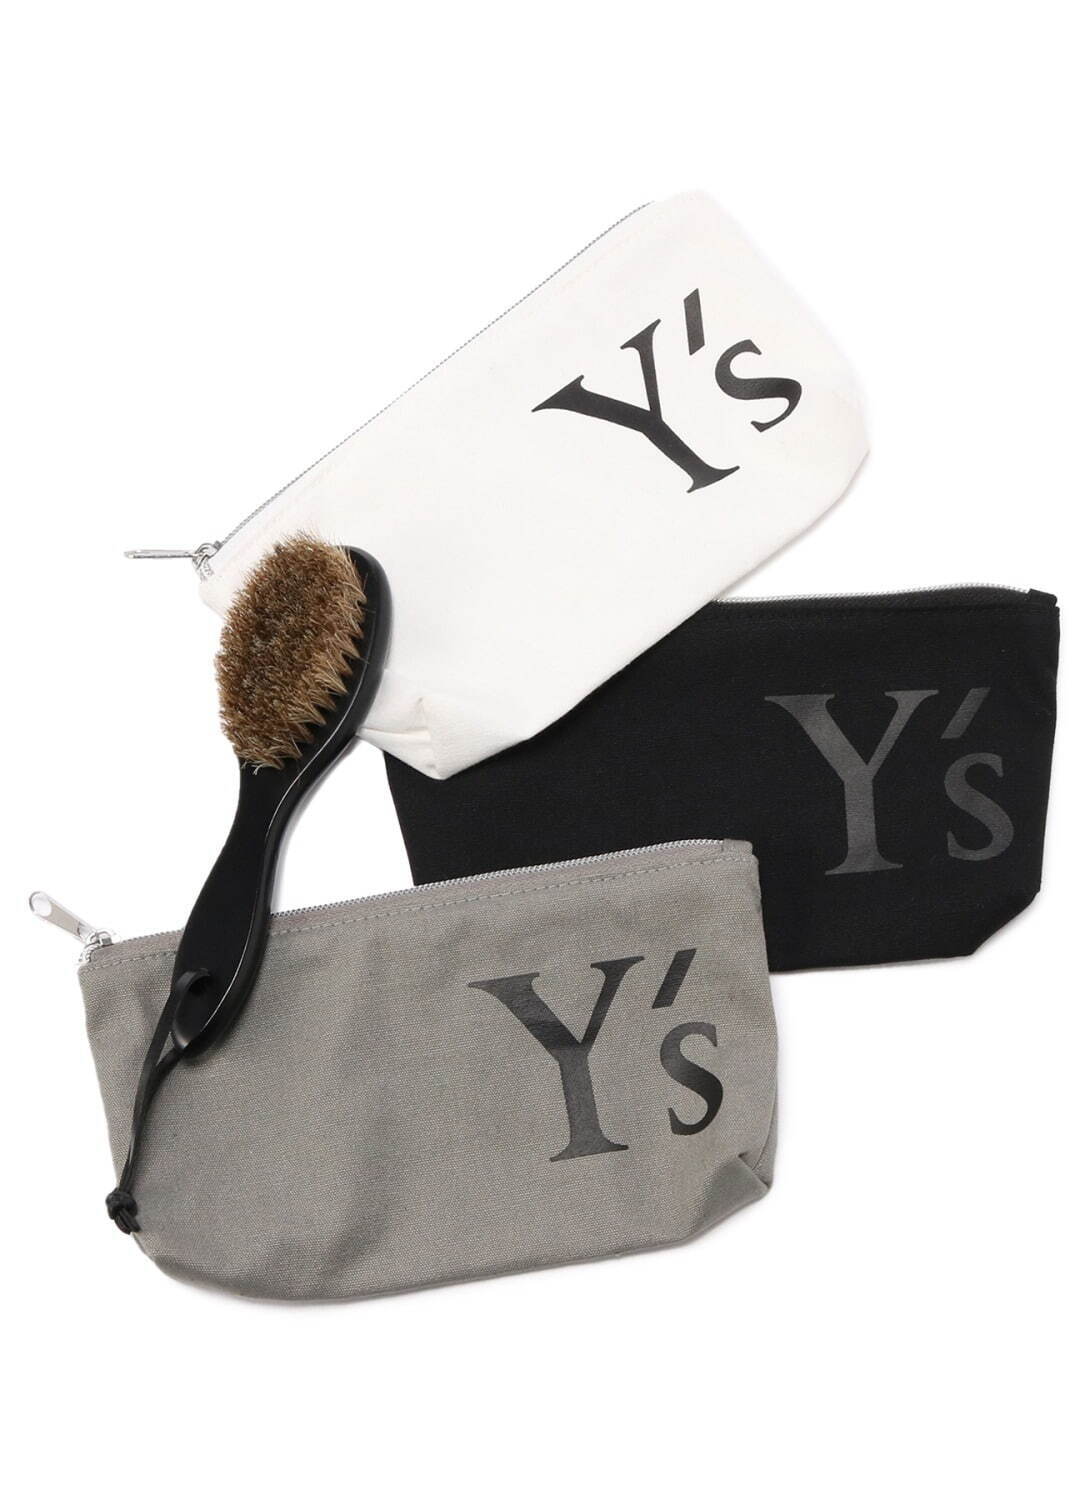 Y'sの新作ウェア - “重ね着風”半袖＆長袖ストライプシャツ、軽やかな